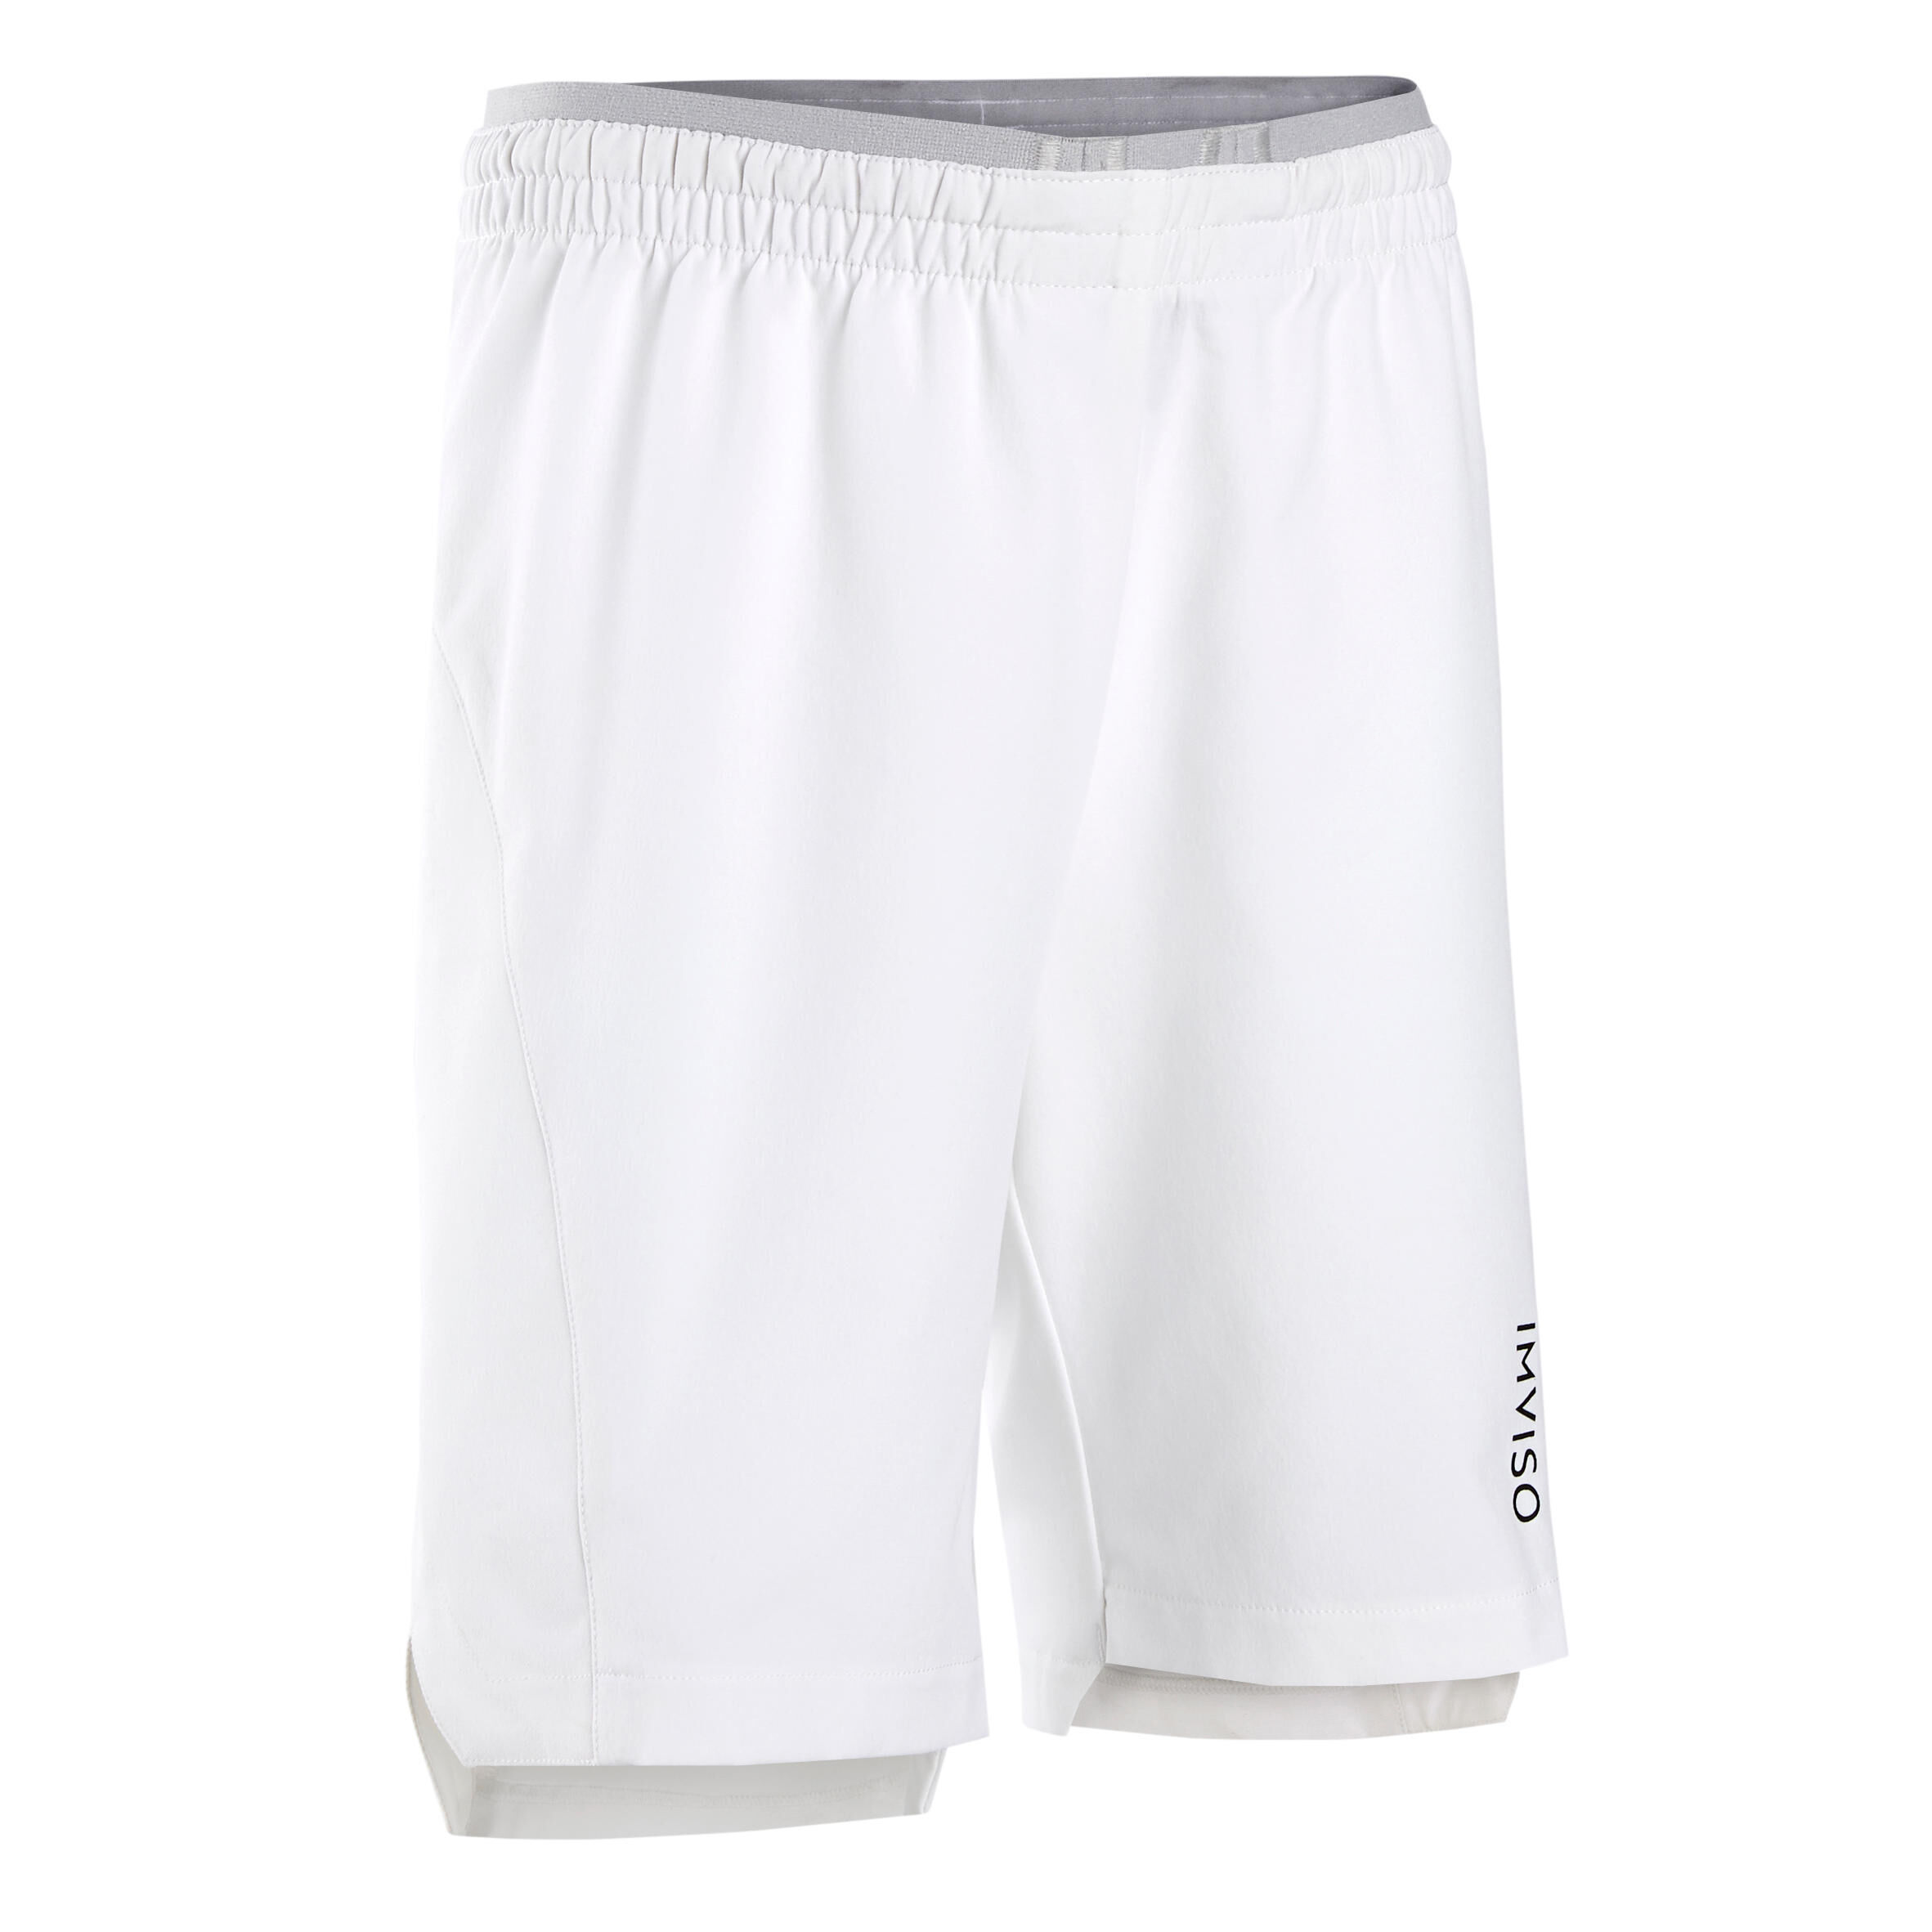 IMVISO Kids' Futsal Shorts - White